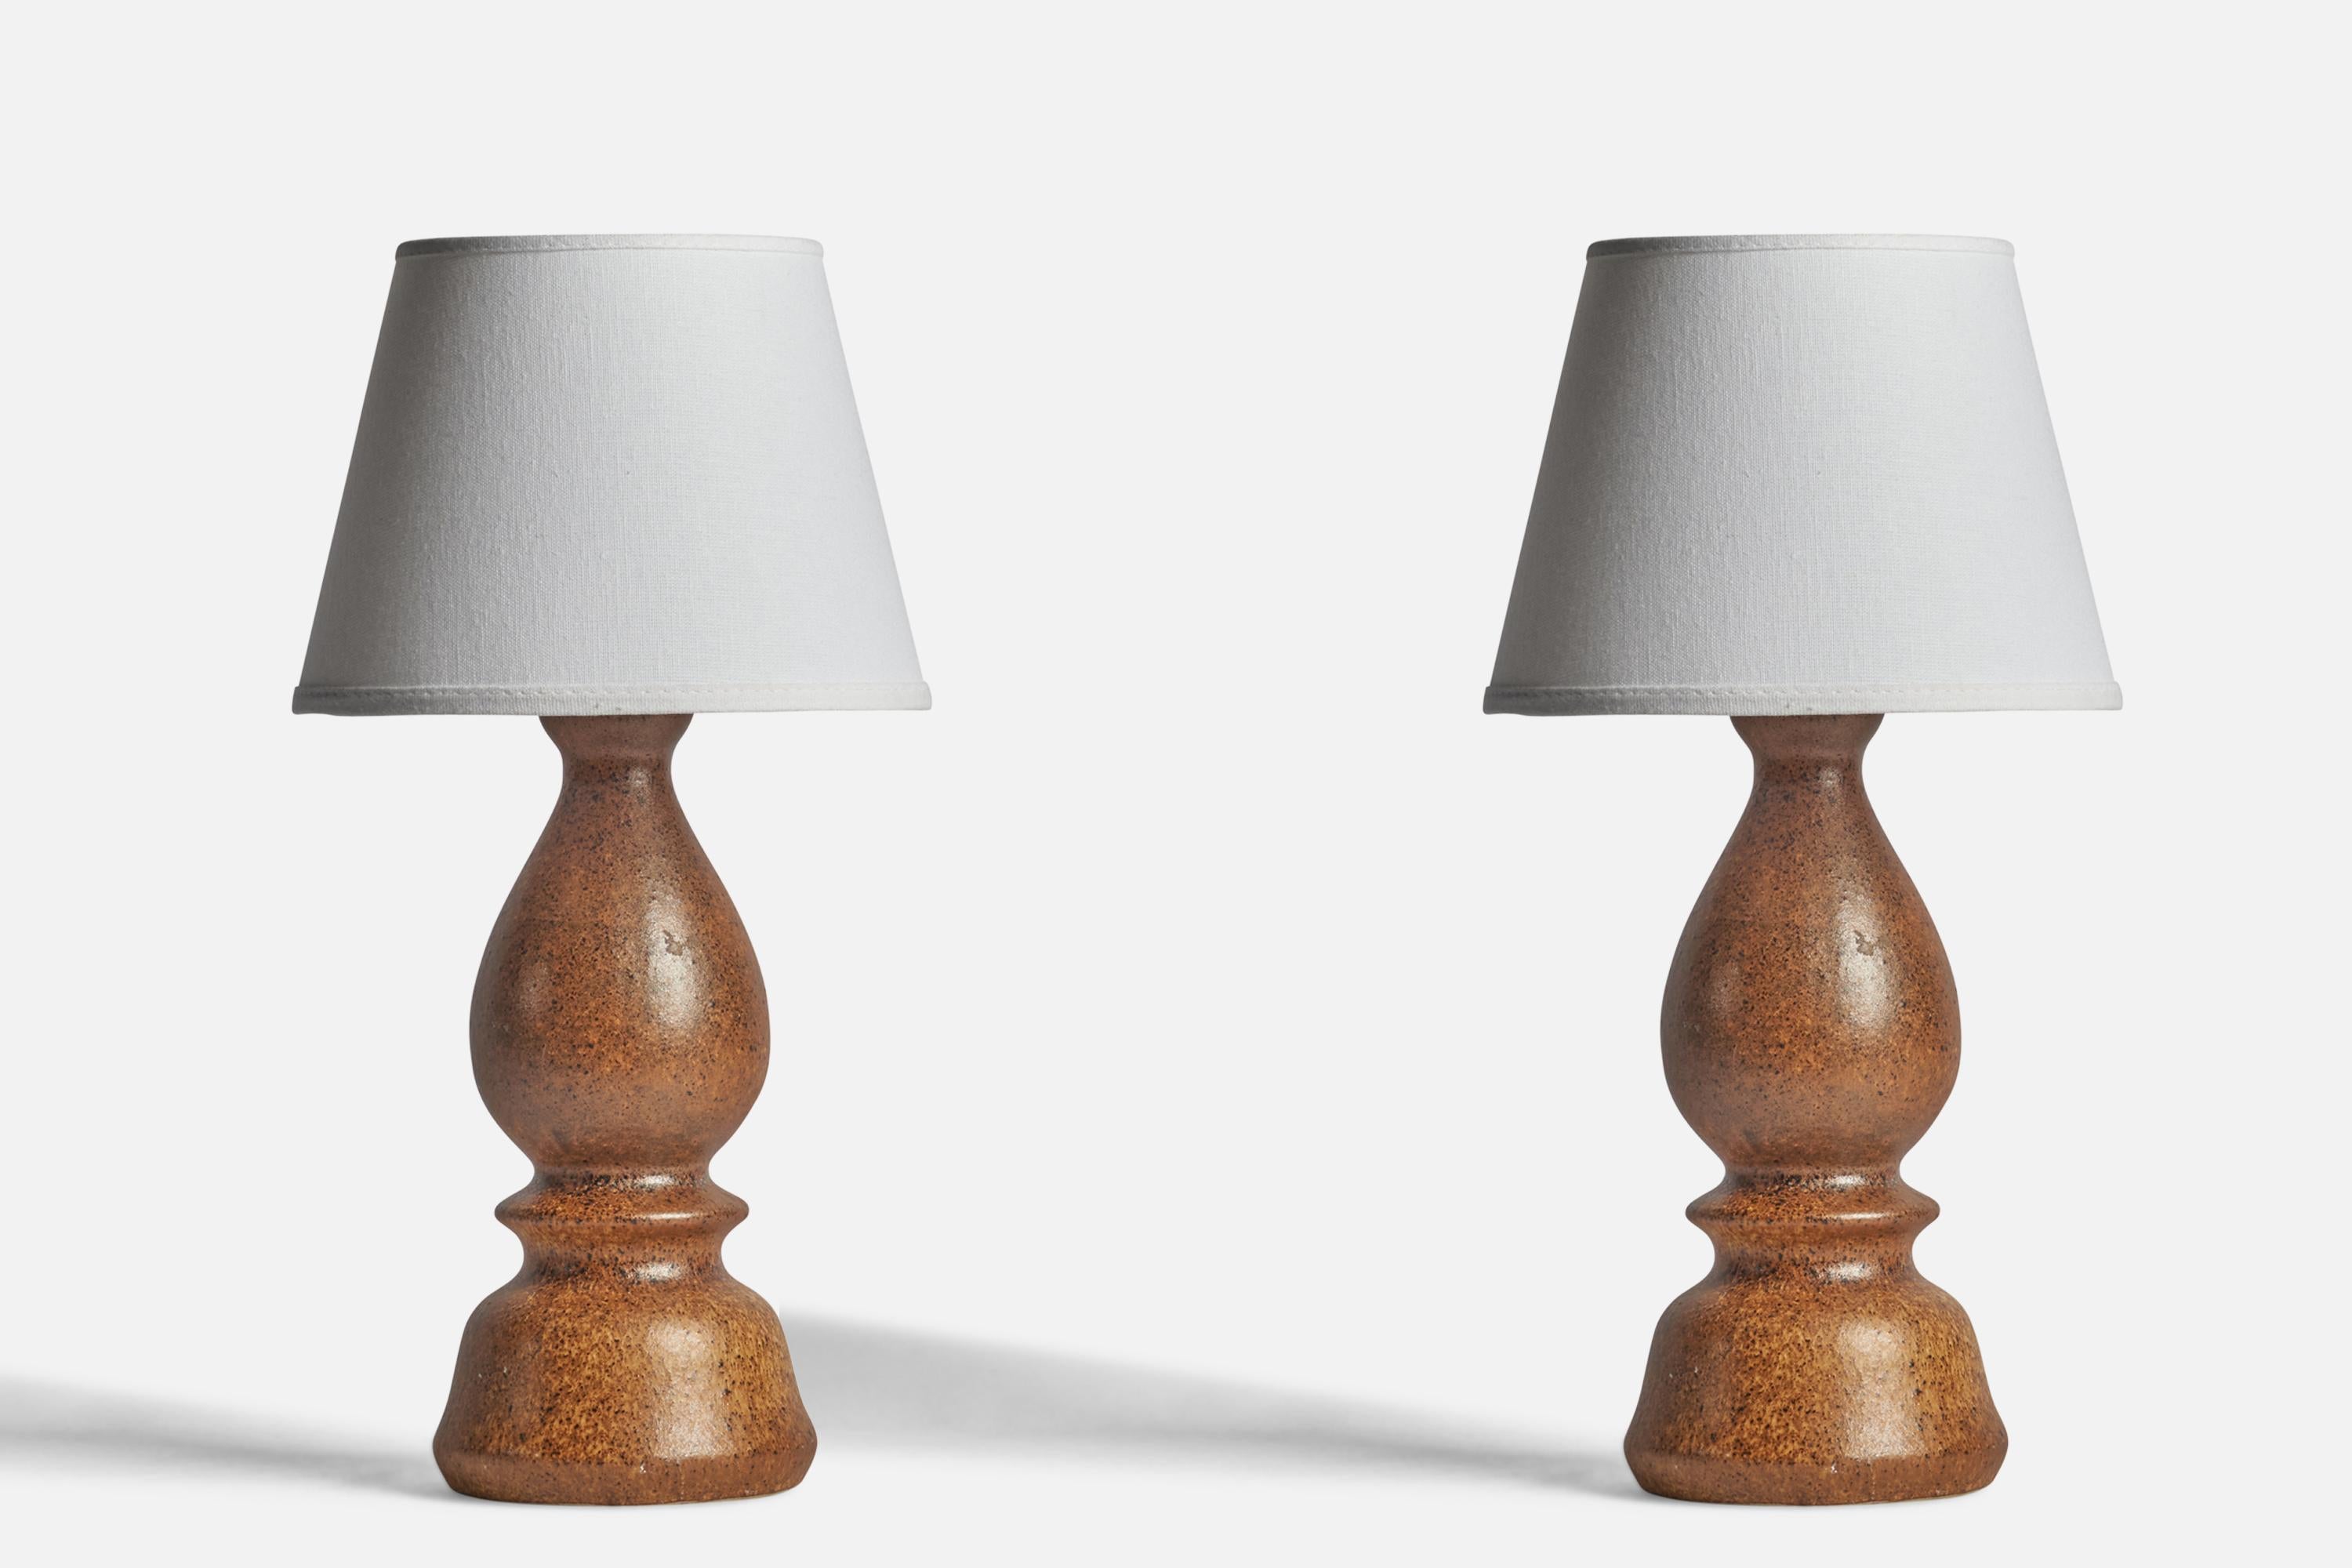 Paire de lampes de table en grès émaillé brun conçues par Bruno Karlsson et produites par Ego Stengods, Suède, années 1960.

Dimensions de la lampe (pouces) : 13